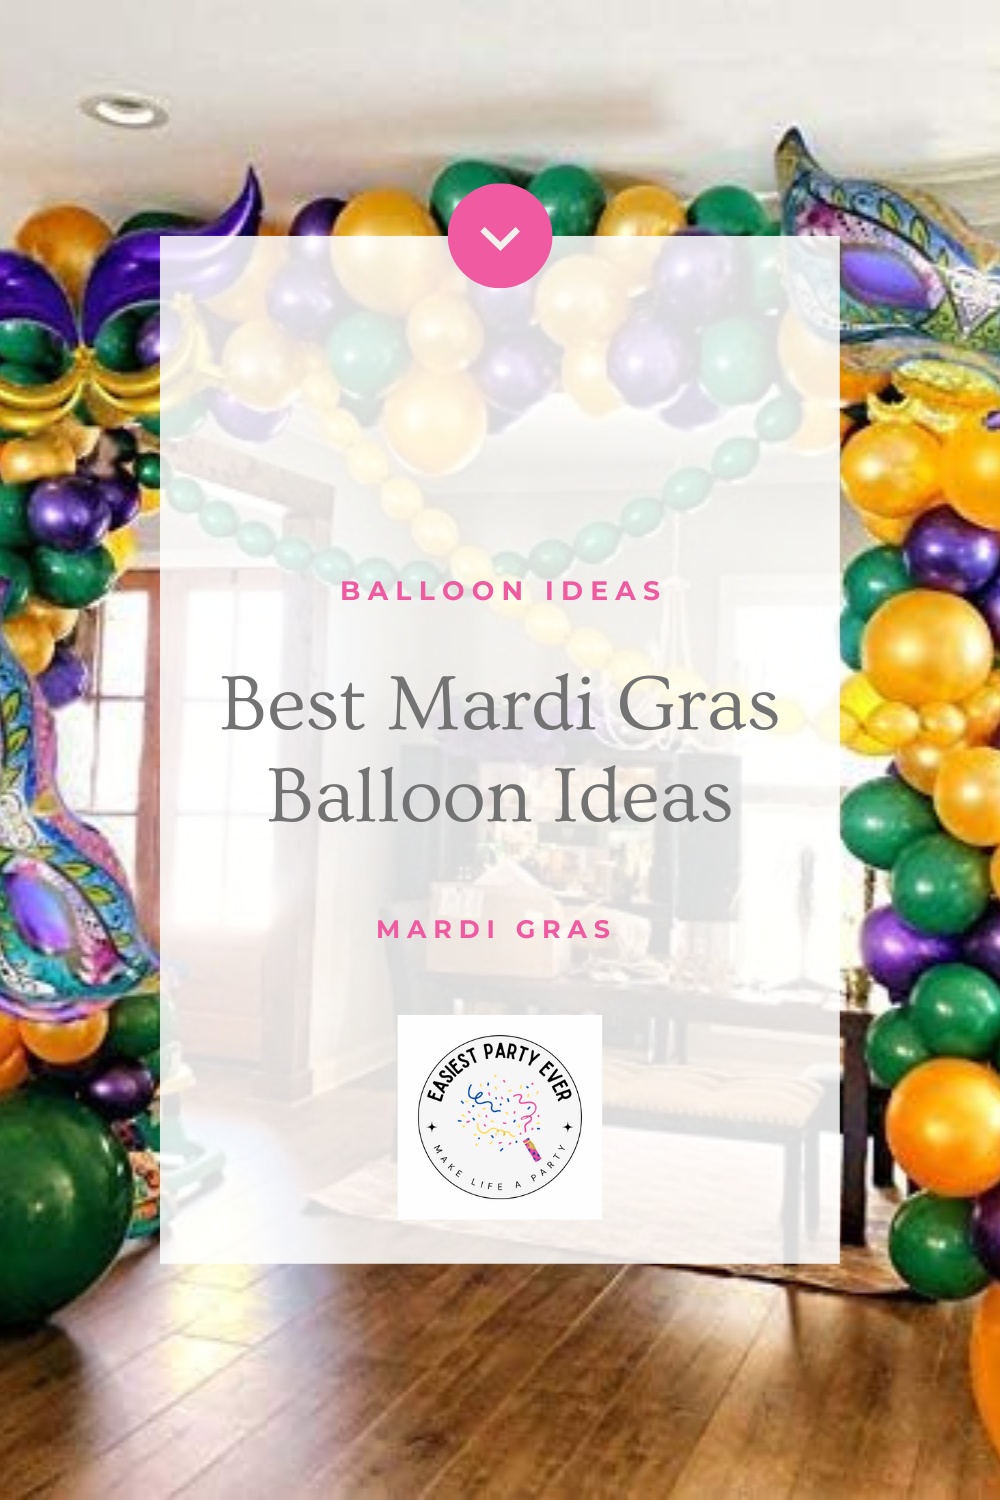 The Best Mardi Gras Balloon Ideas